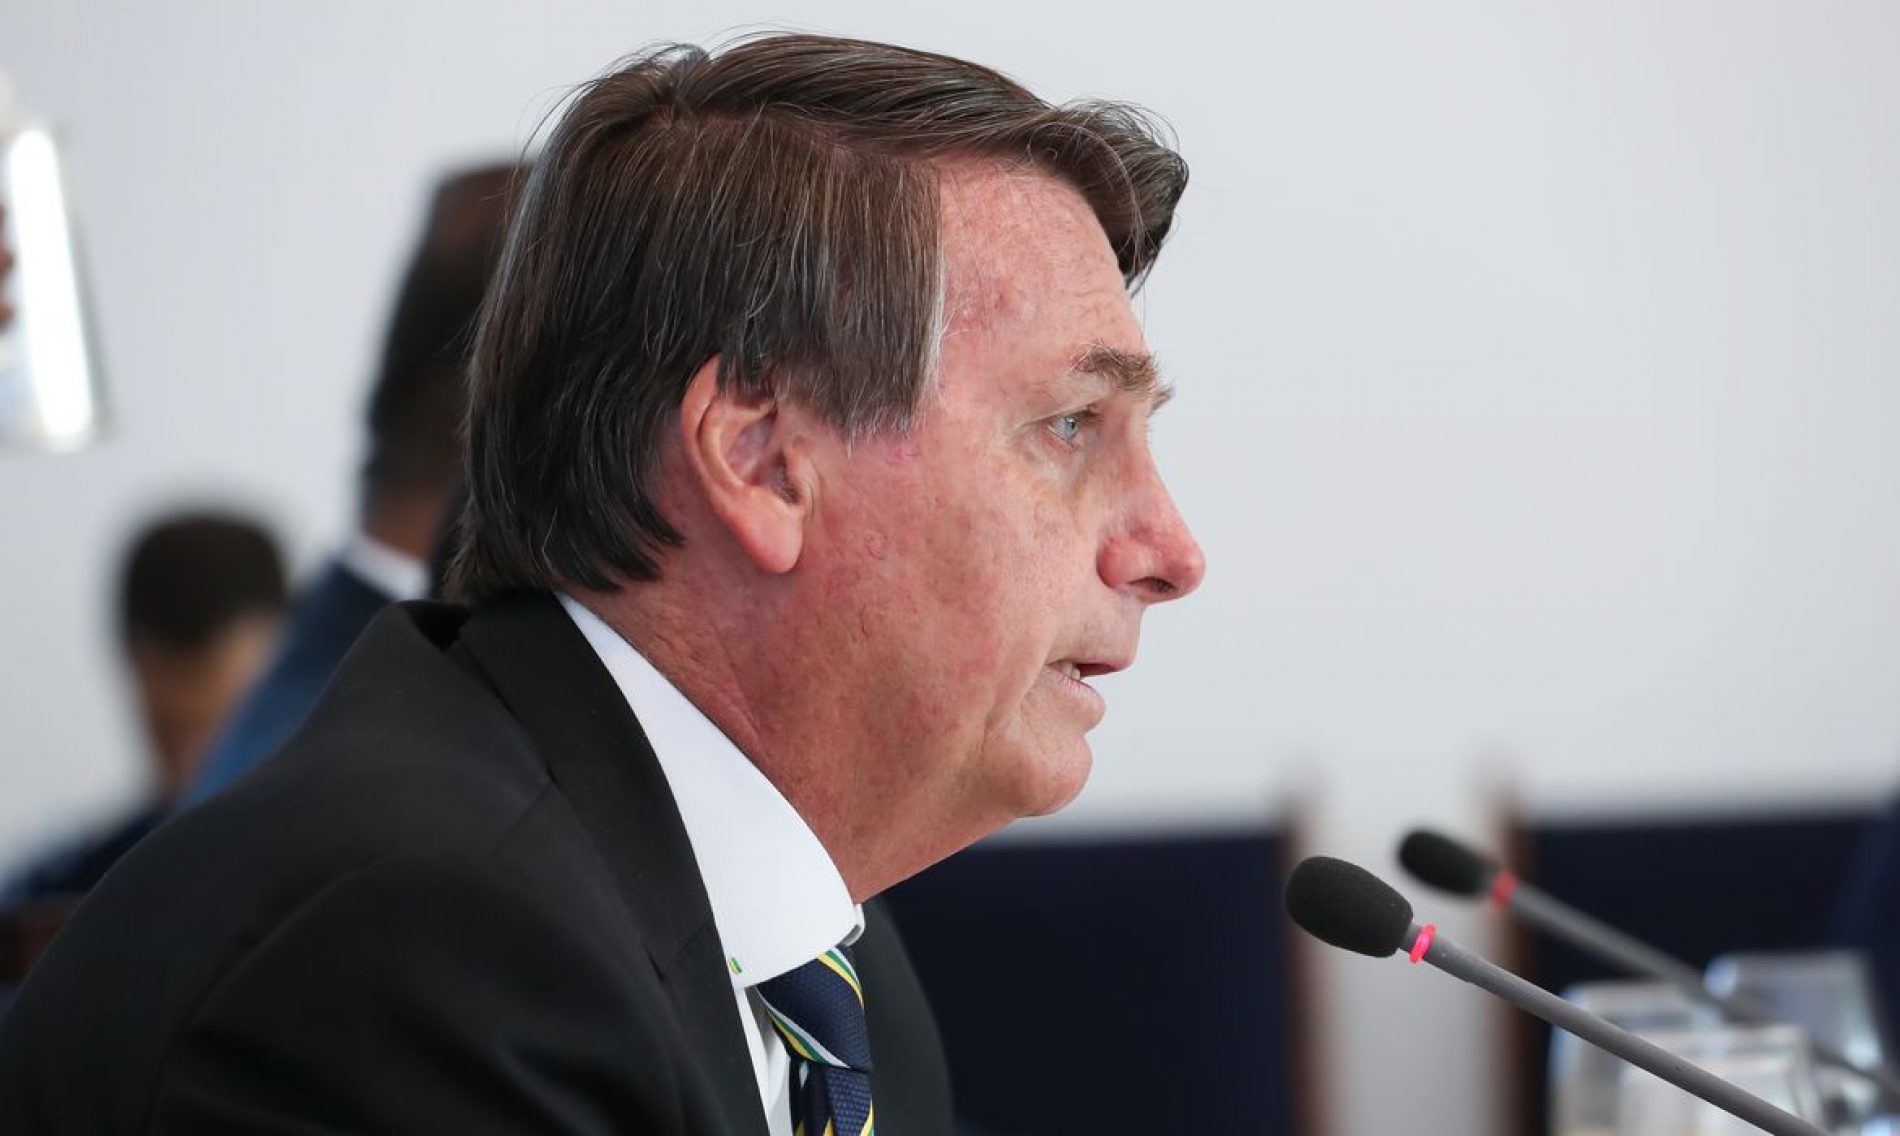 Governo vai manter o Bolsa Família, diz Bolsonaro